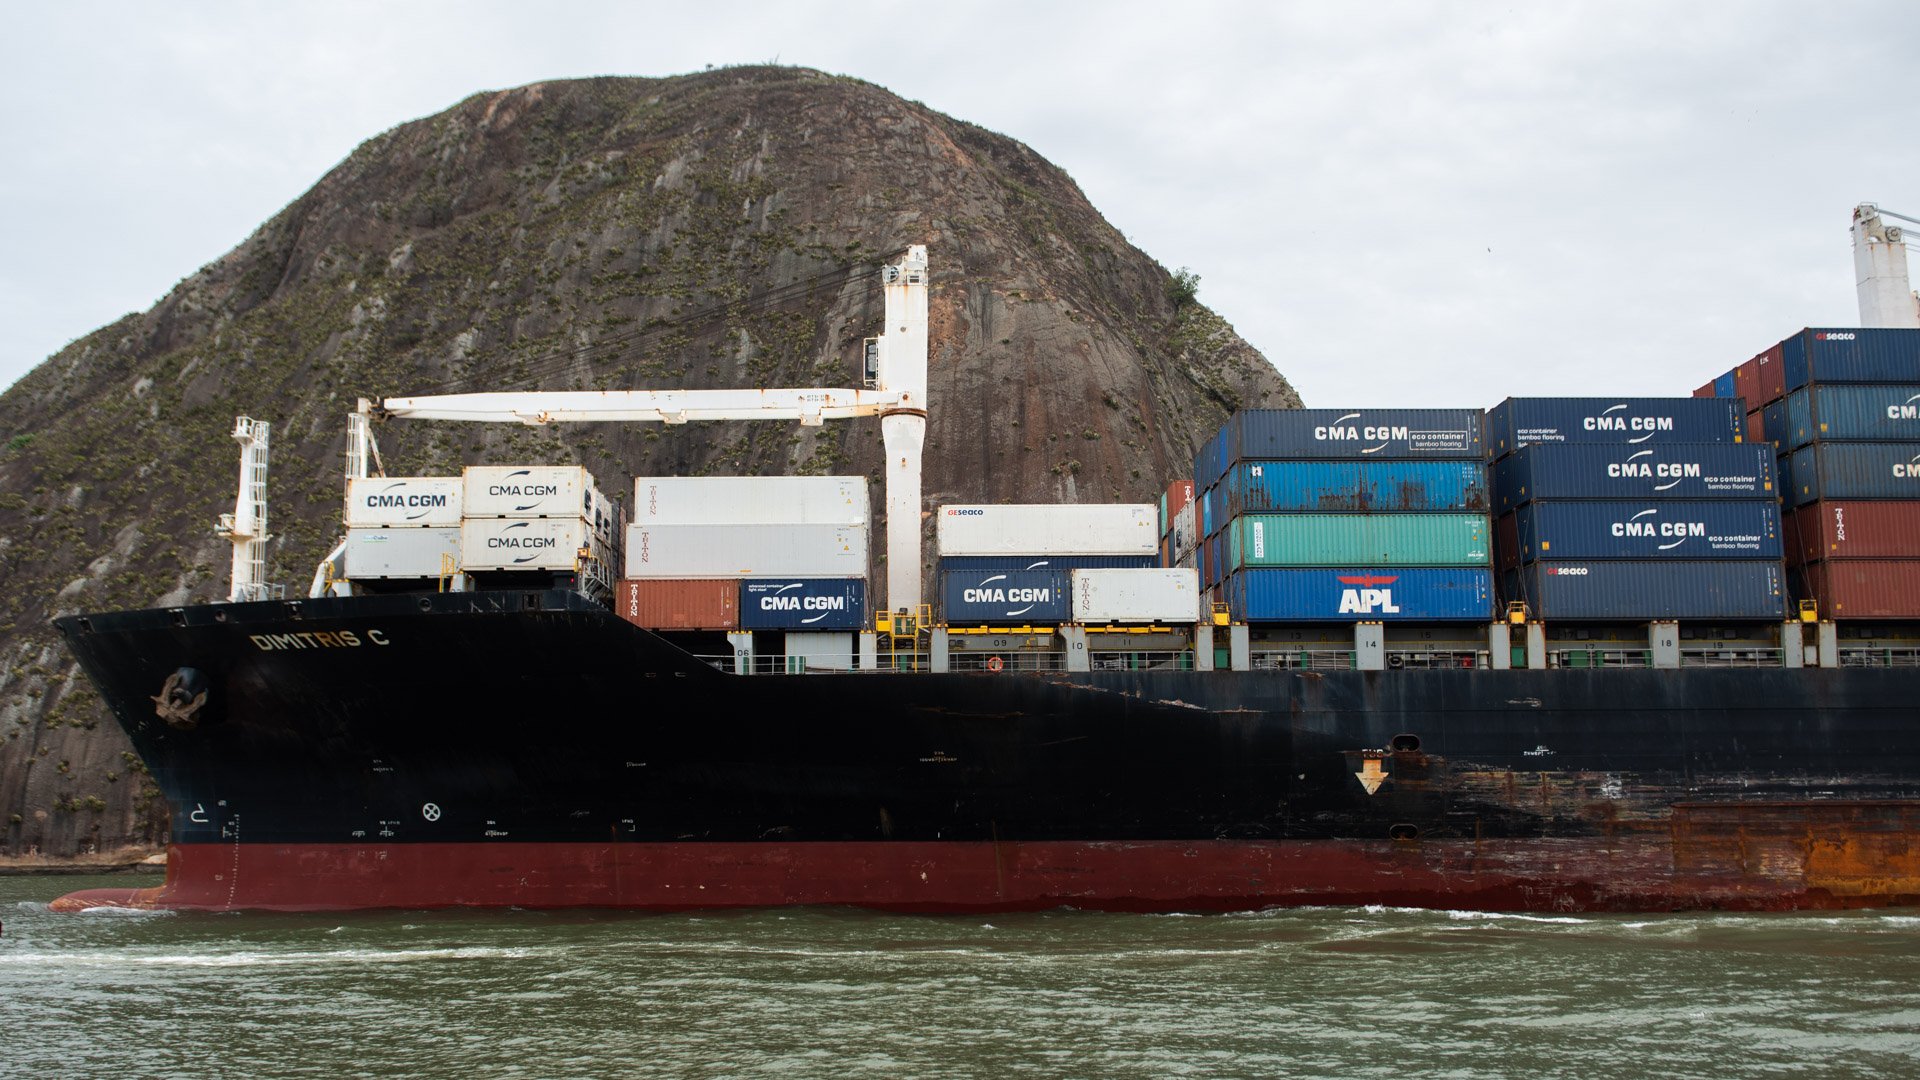 Porto de Vitória recebe navio com maior comprimento de sua história